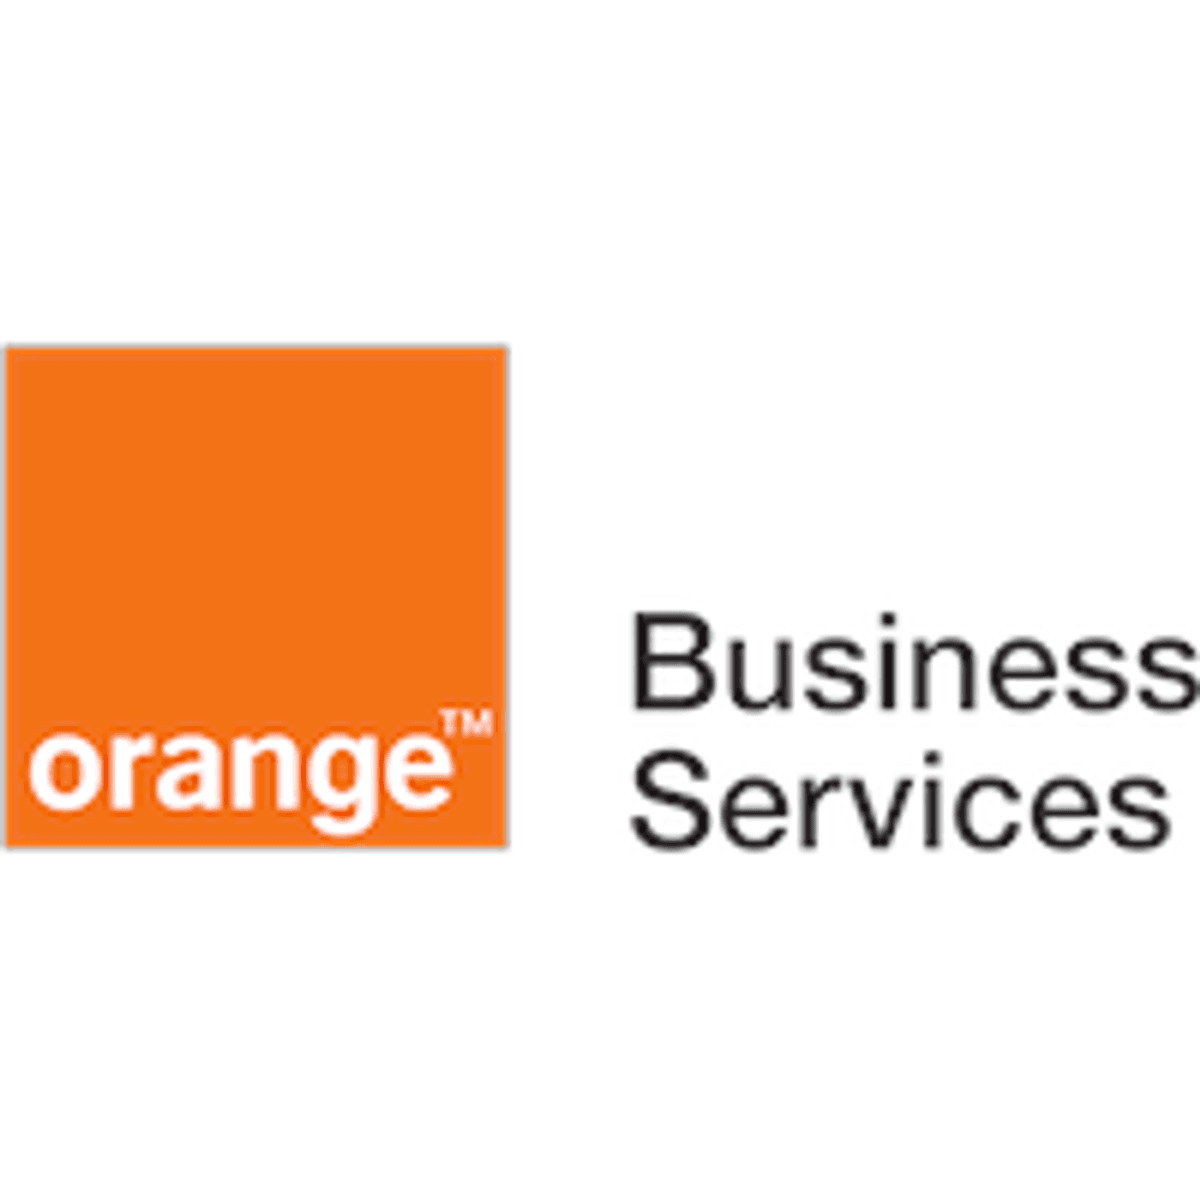 KONE migreert contact center naar cloud van Orange Business Services image